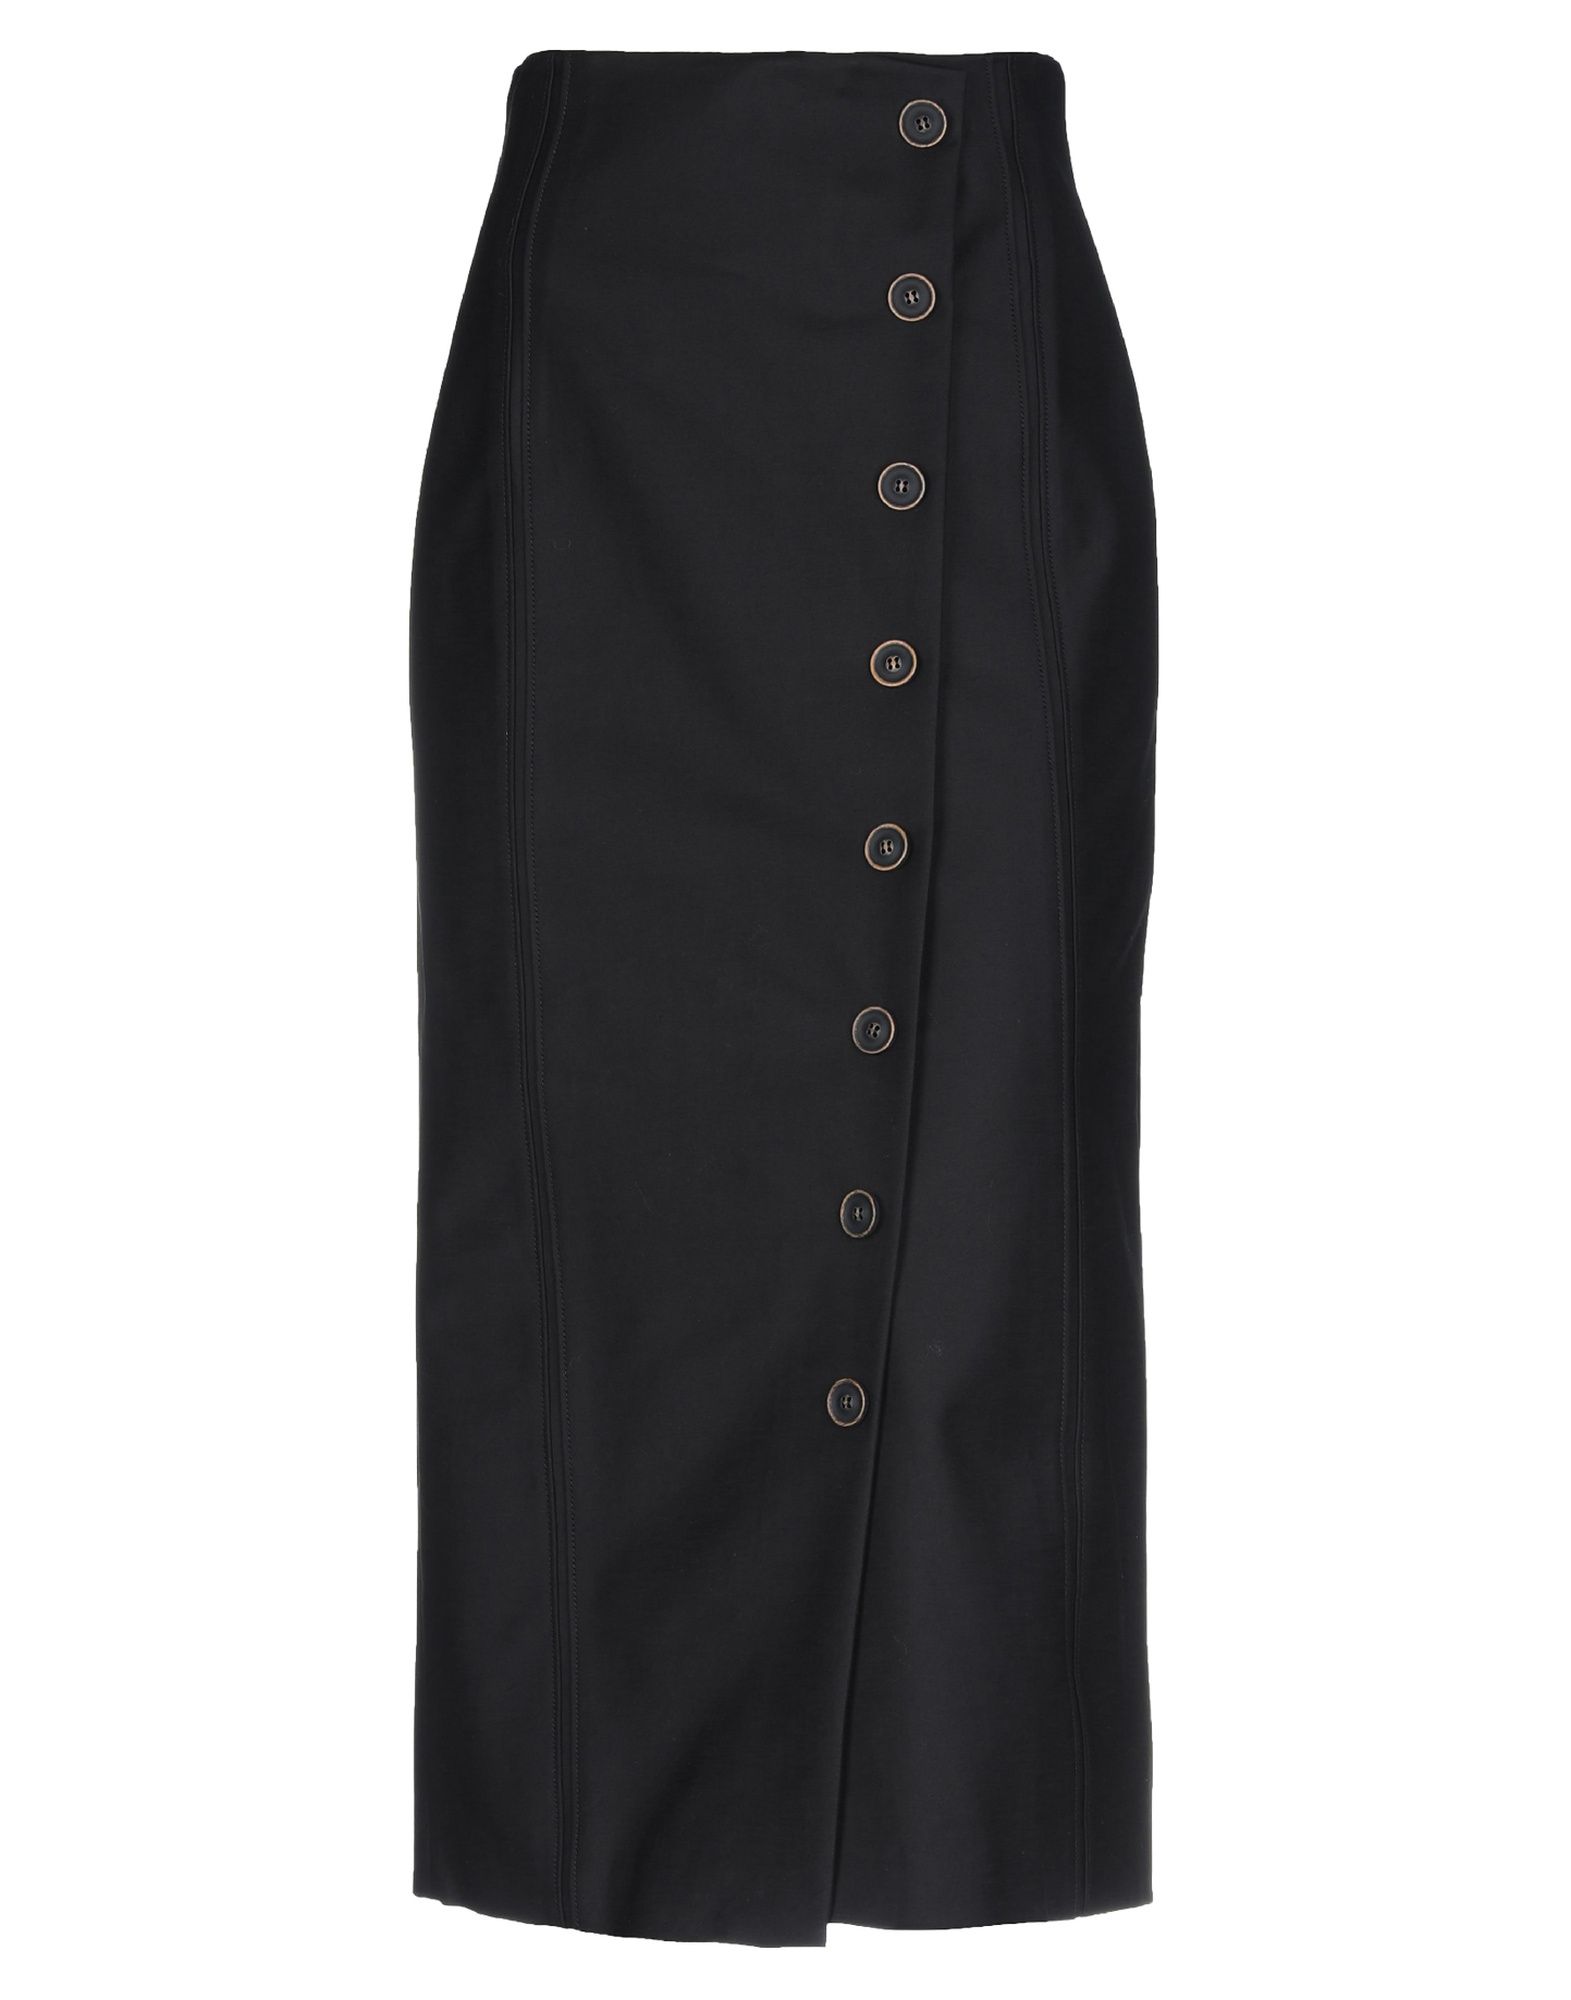 Длинная юбка  - Черный цвет